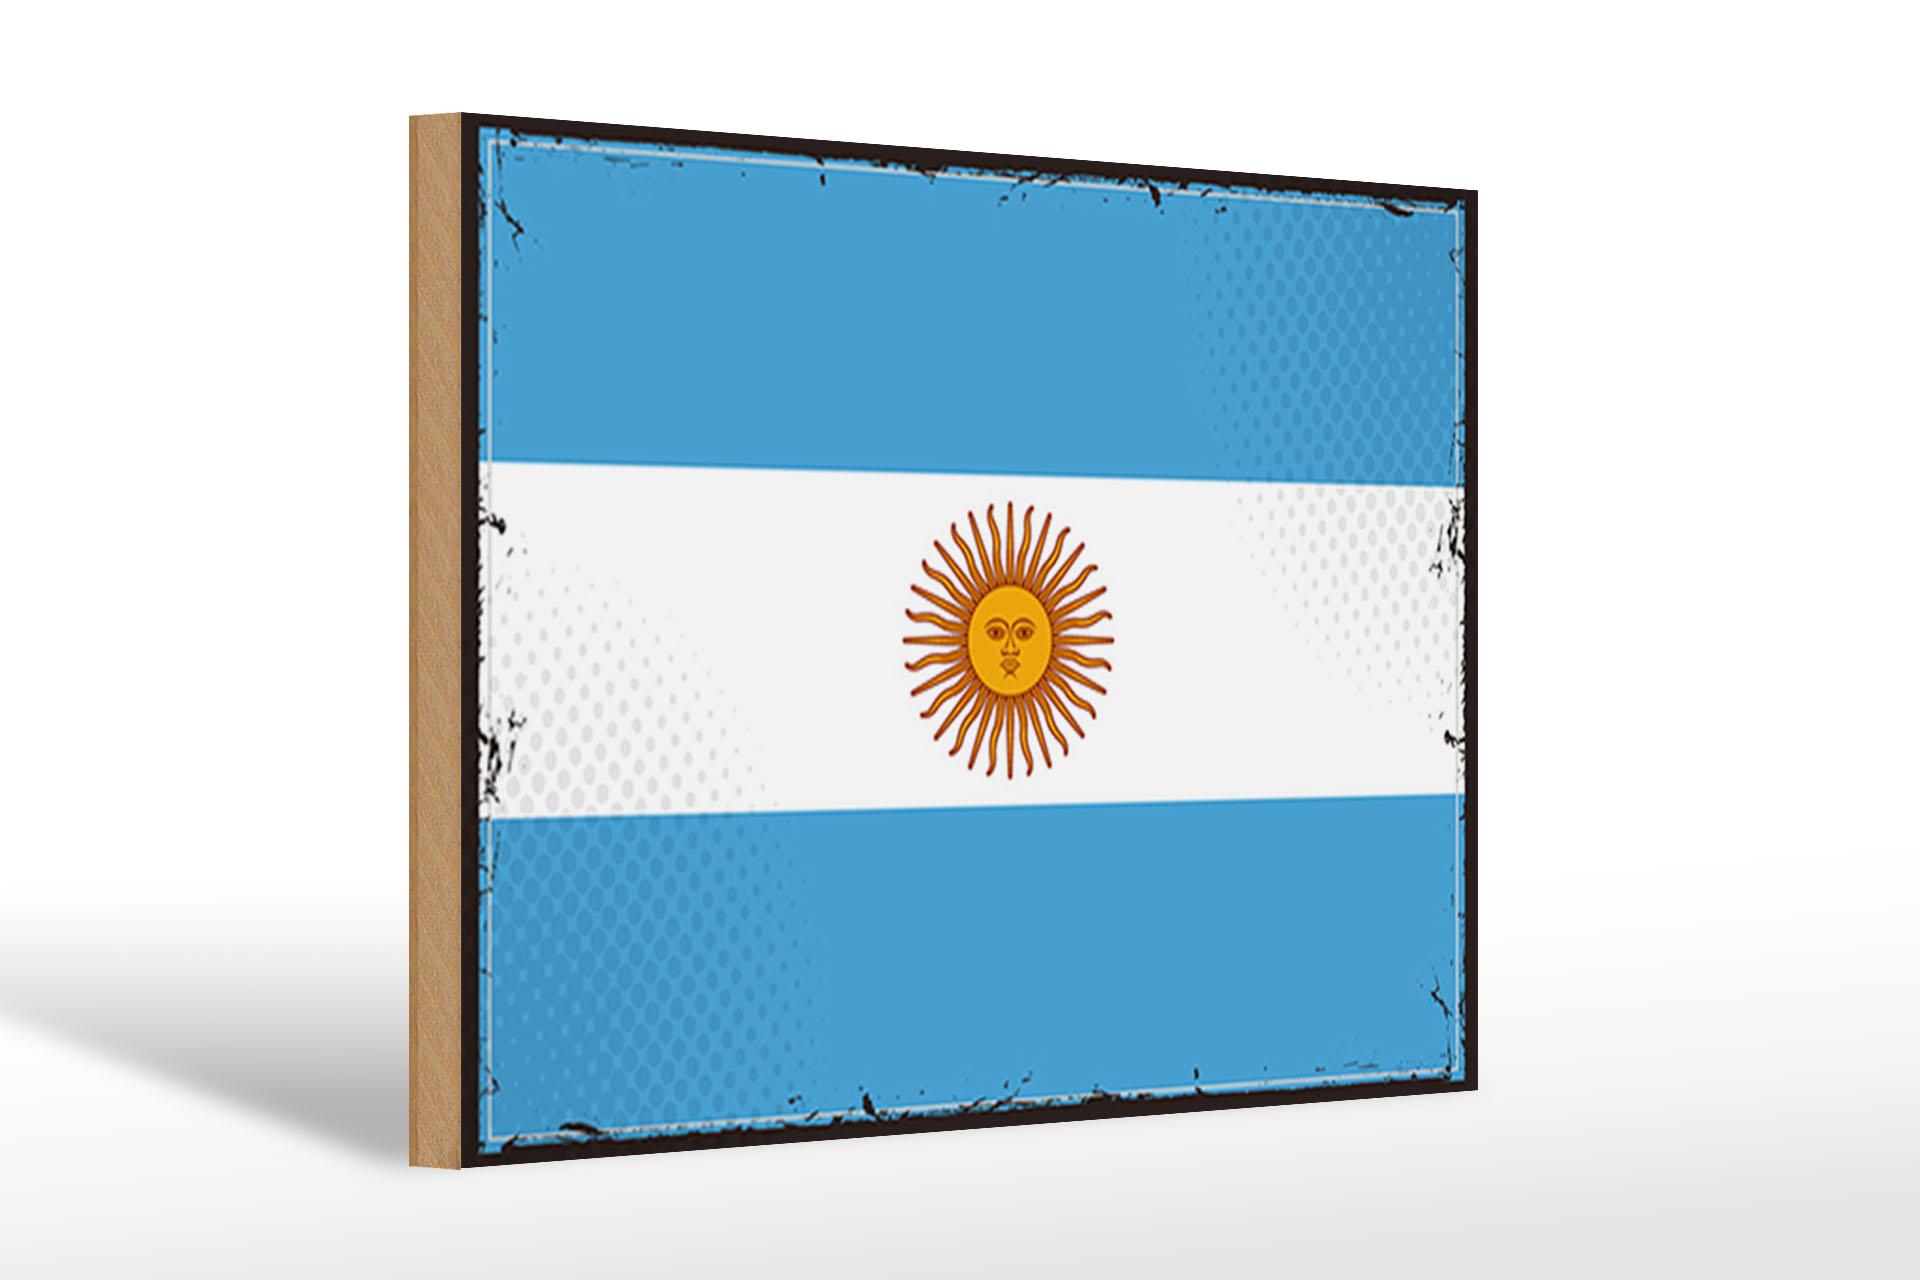 Holzschild Flagge Argentinien 30x20 cm Retro Flag Argentina Schild wooden sign